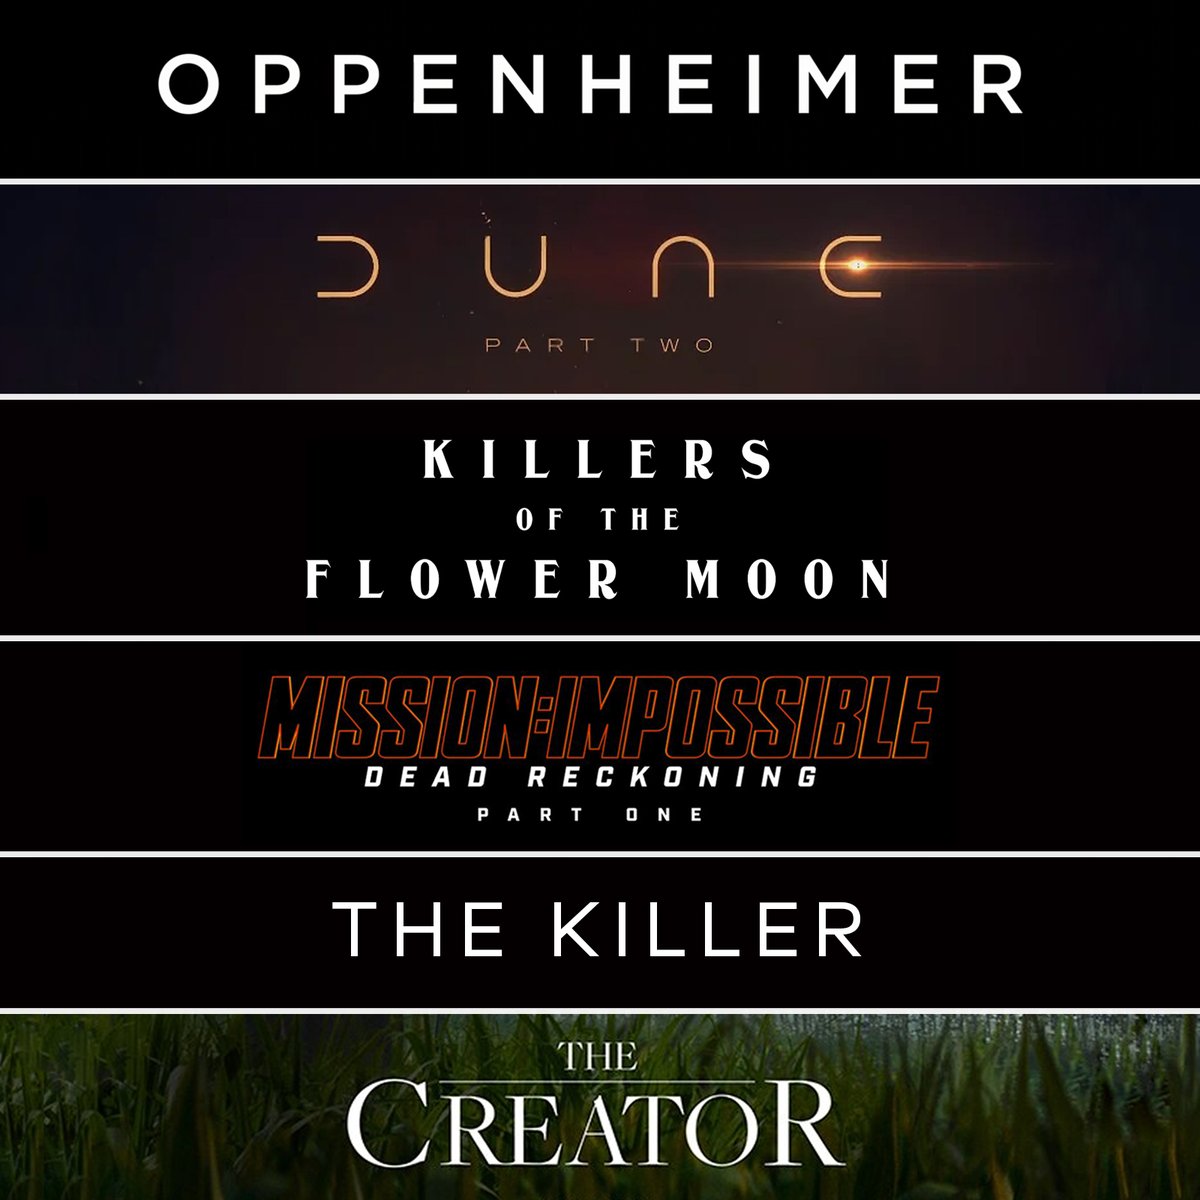 Cinema has well and truly returned. 
#Oppenheimer #Dune #DunePart2